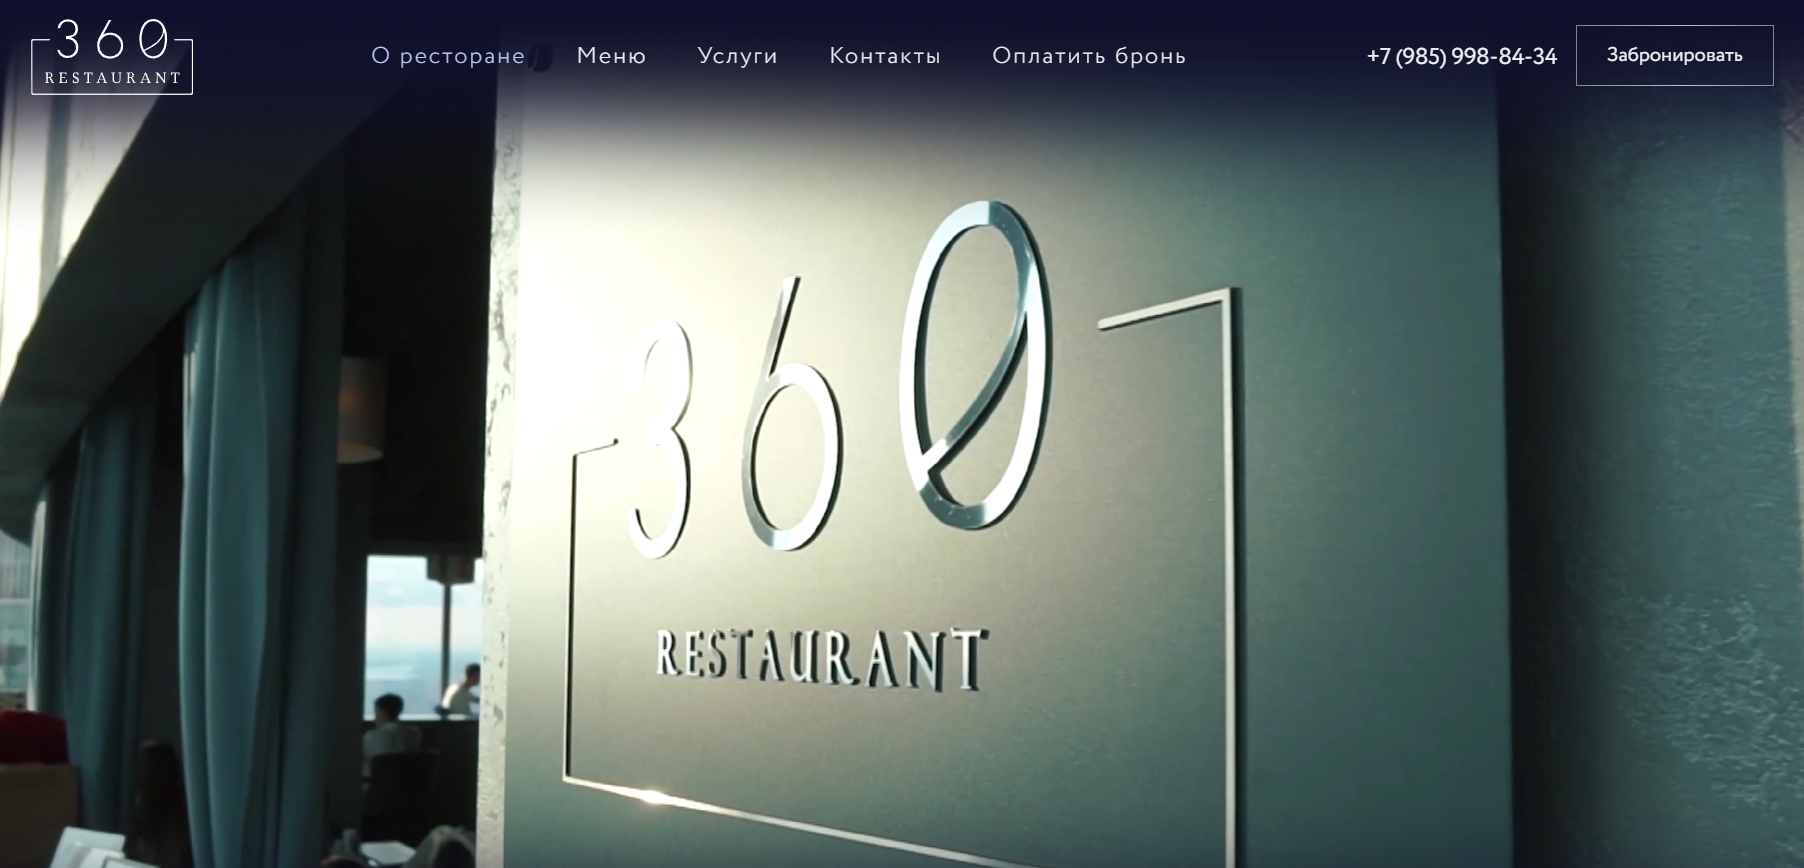 360 Restaurant отзывы